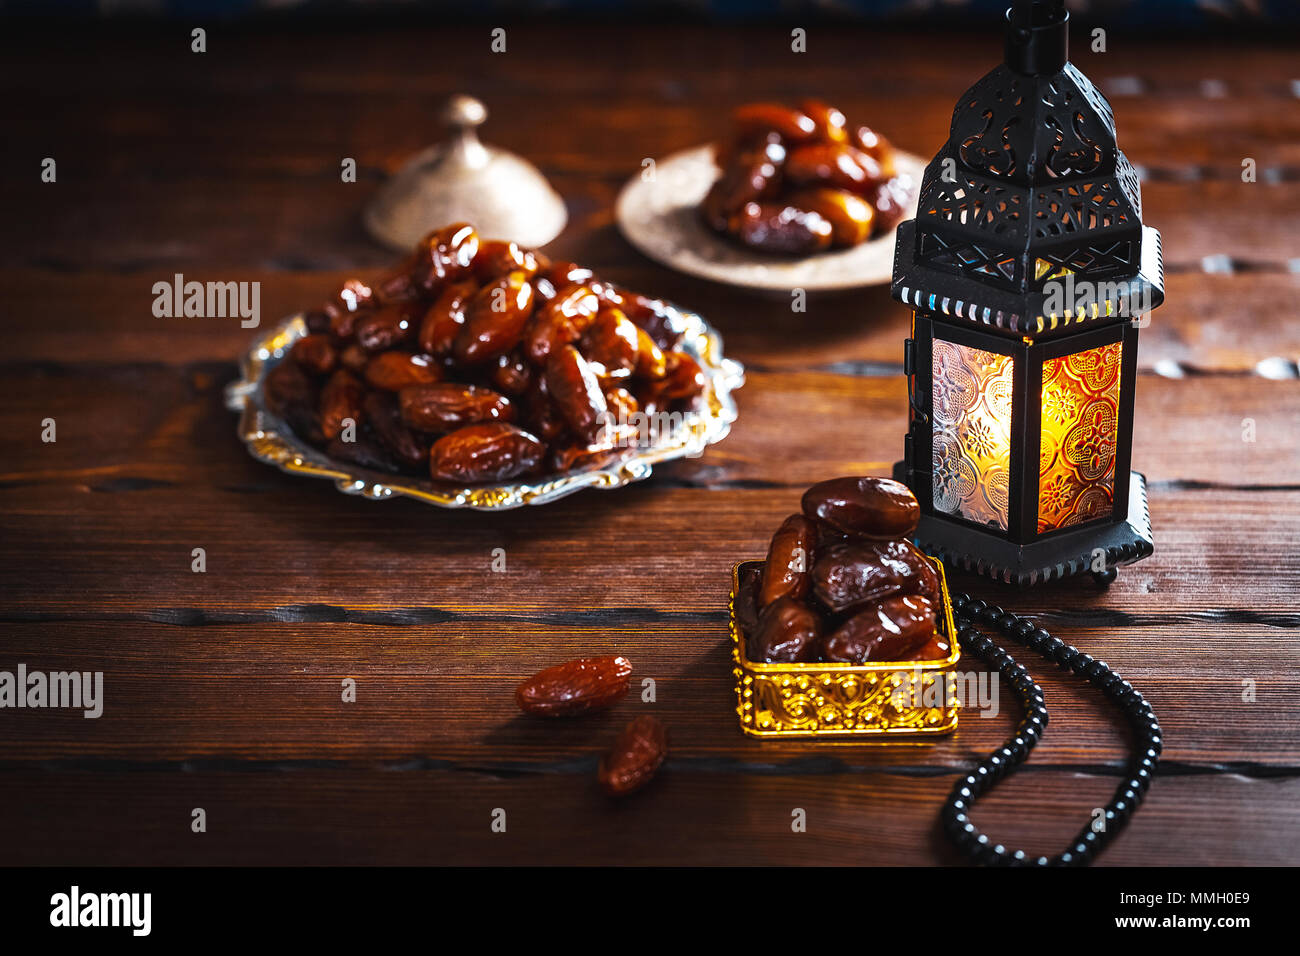 Ramadan lantern -Fotos und -Bildmaterial in hoher Auflösung - Seite 2 -  Alamy